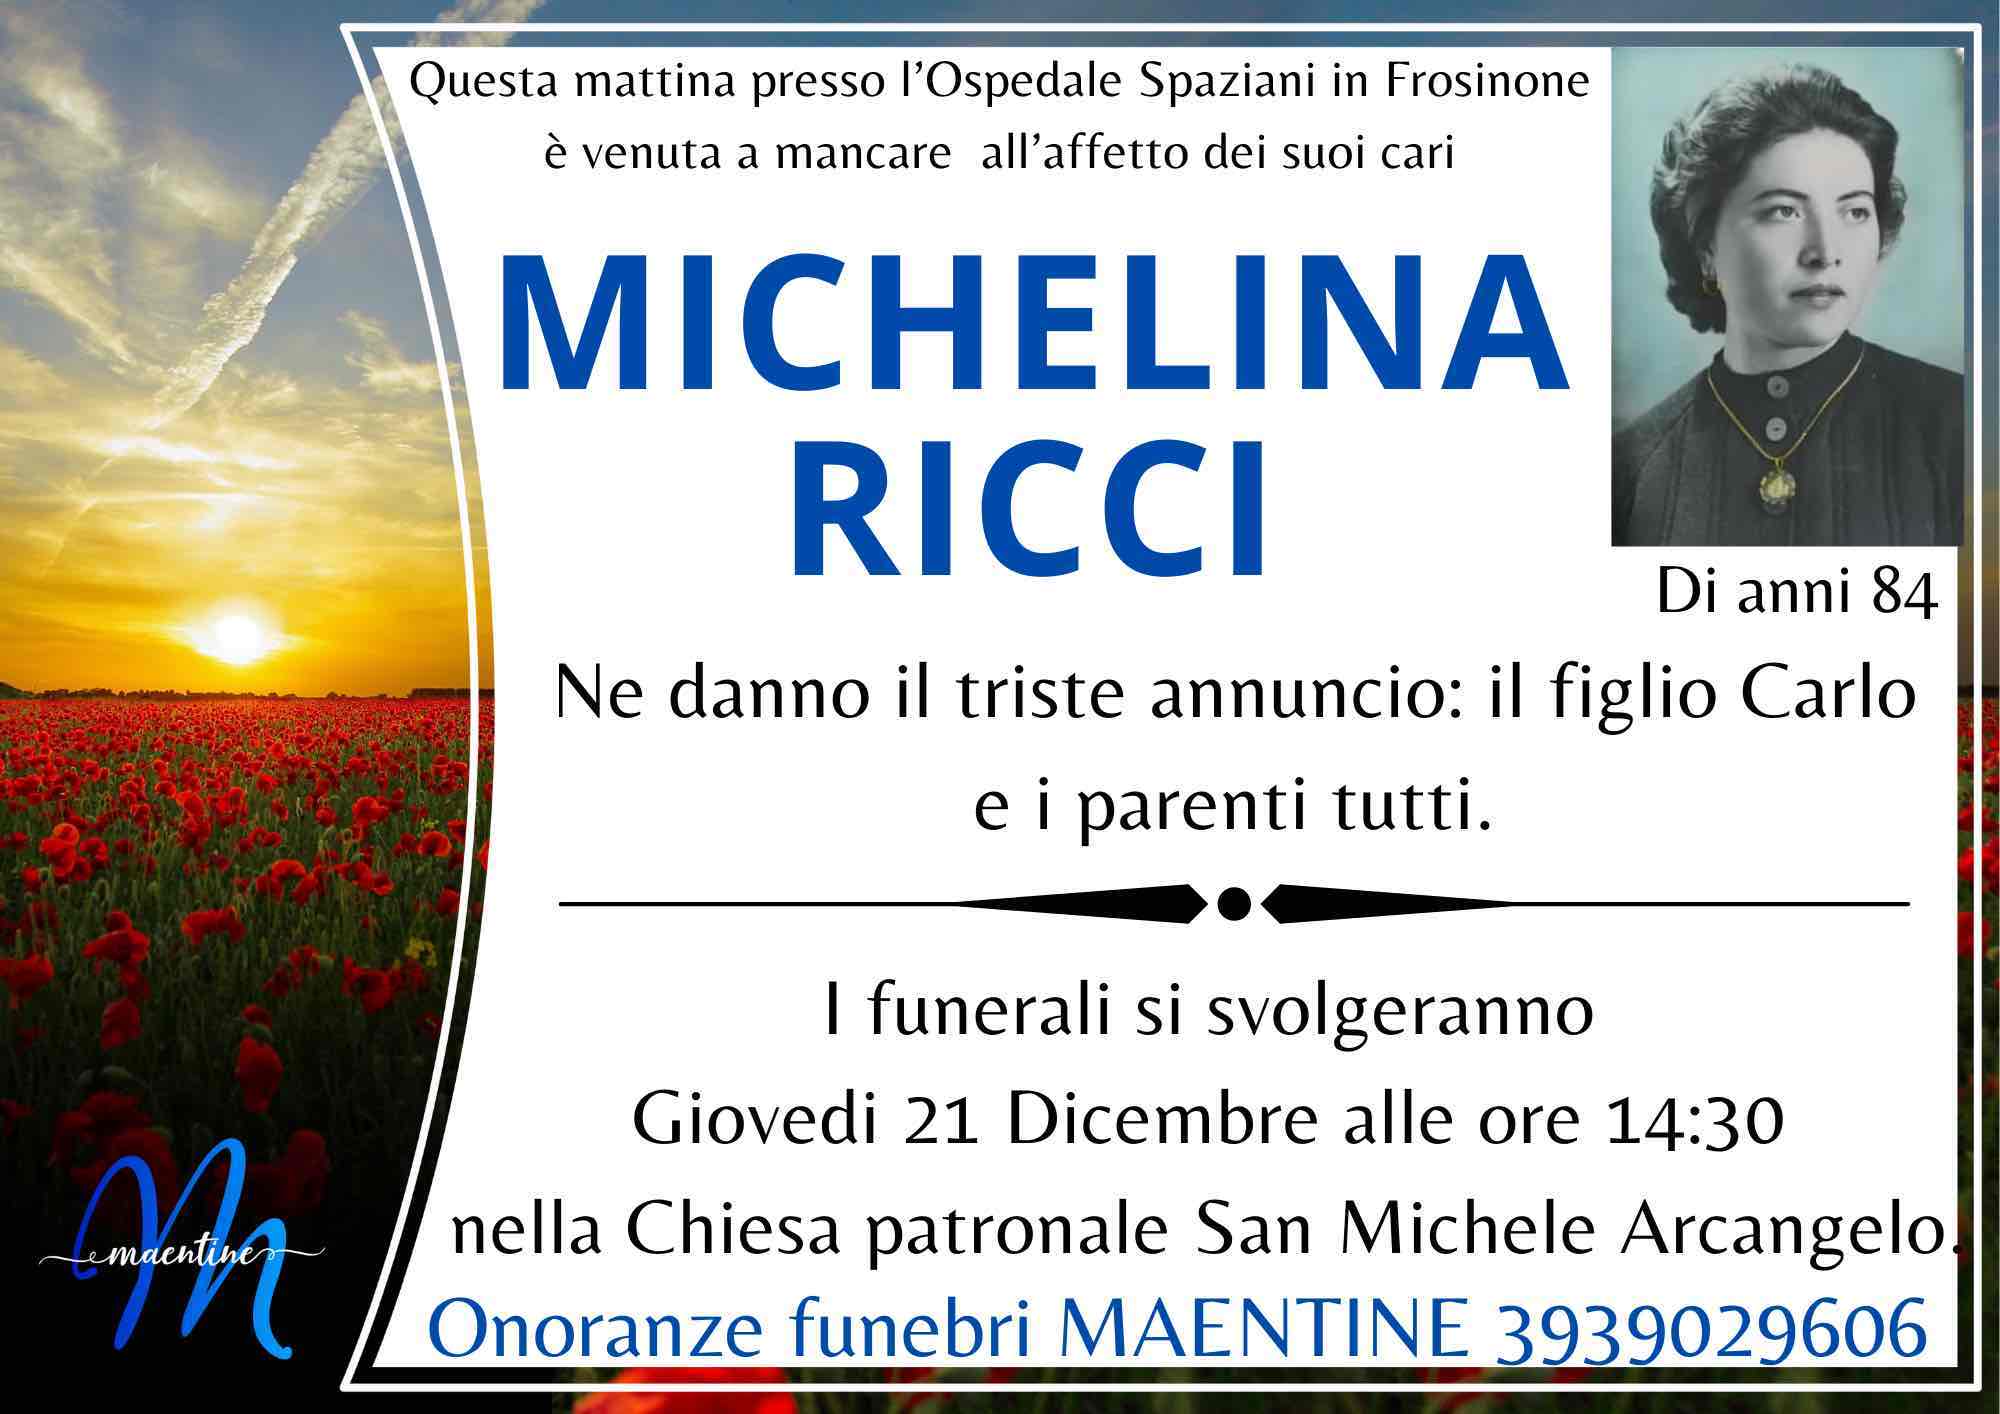 Michelina Ricci